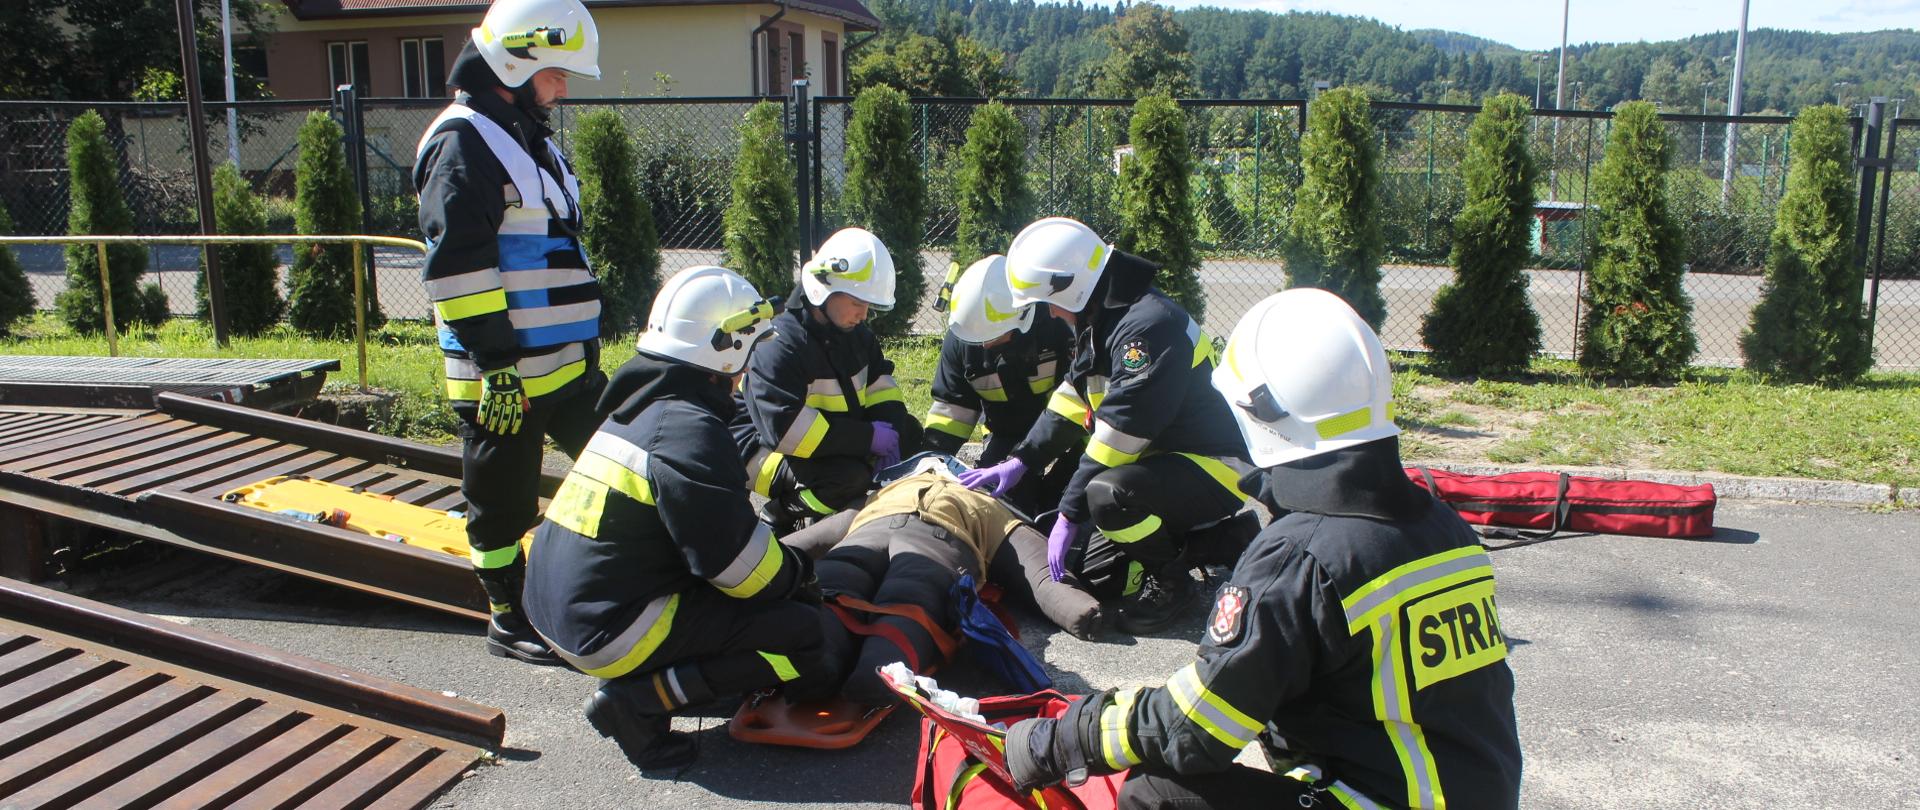 zdjęcie przedstawia realizację części praktycznej szkolenia kierujących działaniem ratowniczym dowódców OSP.
